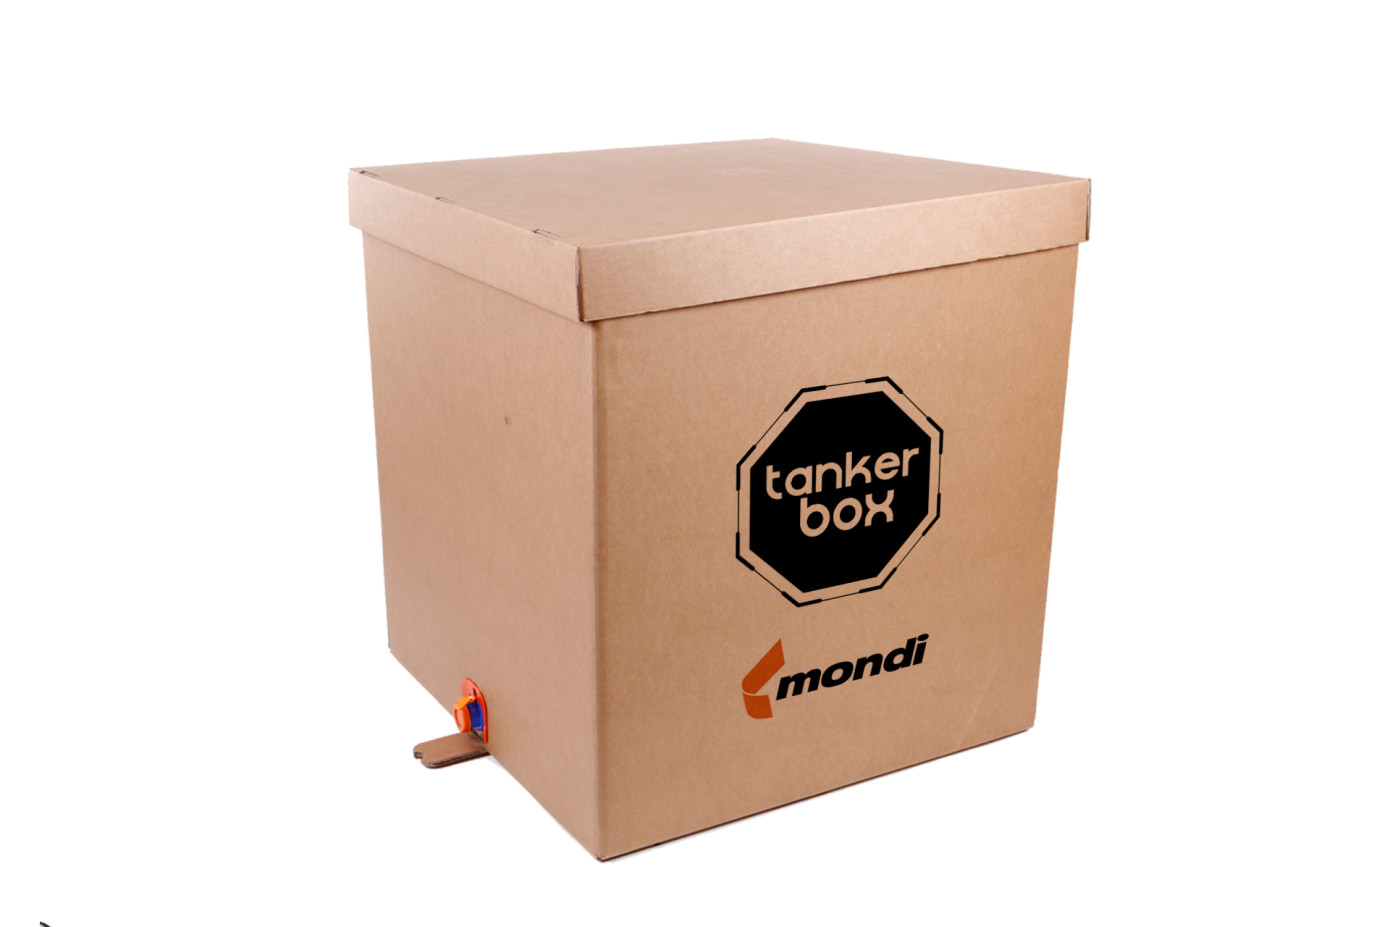 Компания Aromsa будет использовать для своей продукции инновационное упаковочное решение от Mondi